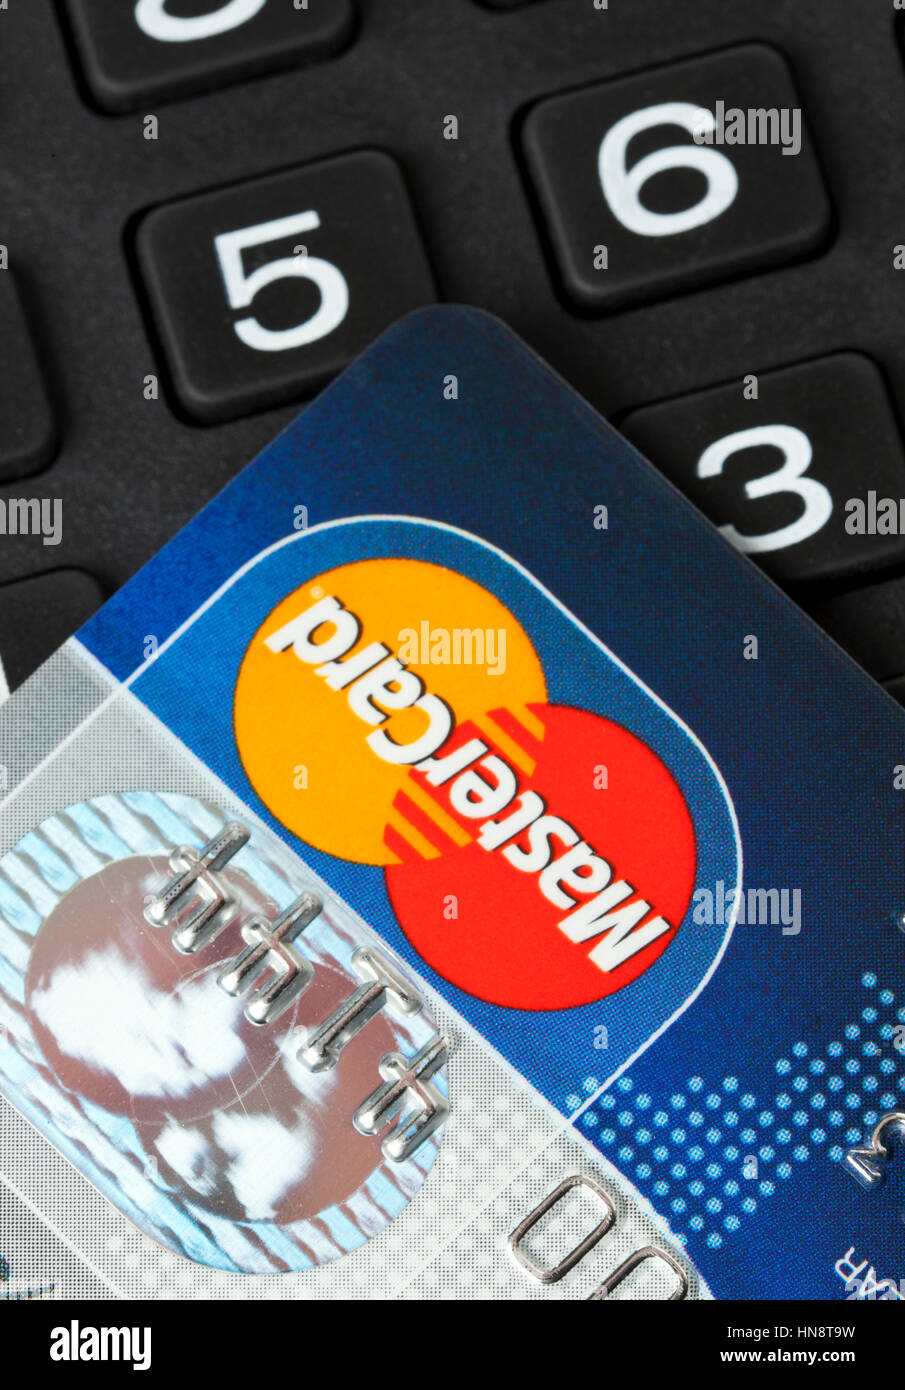 Primo piano della carte di credito MasterCard sul tastierino numerico. Mastercard è una delle più grandi società di carte di credito in tutto il mondo Foto Stock